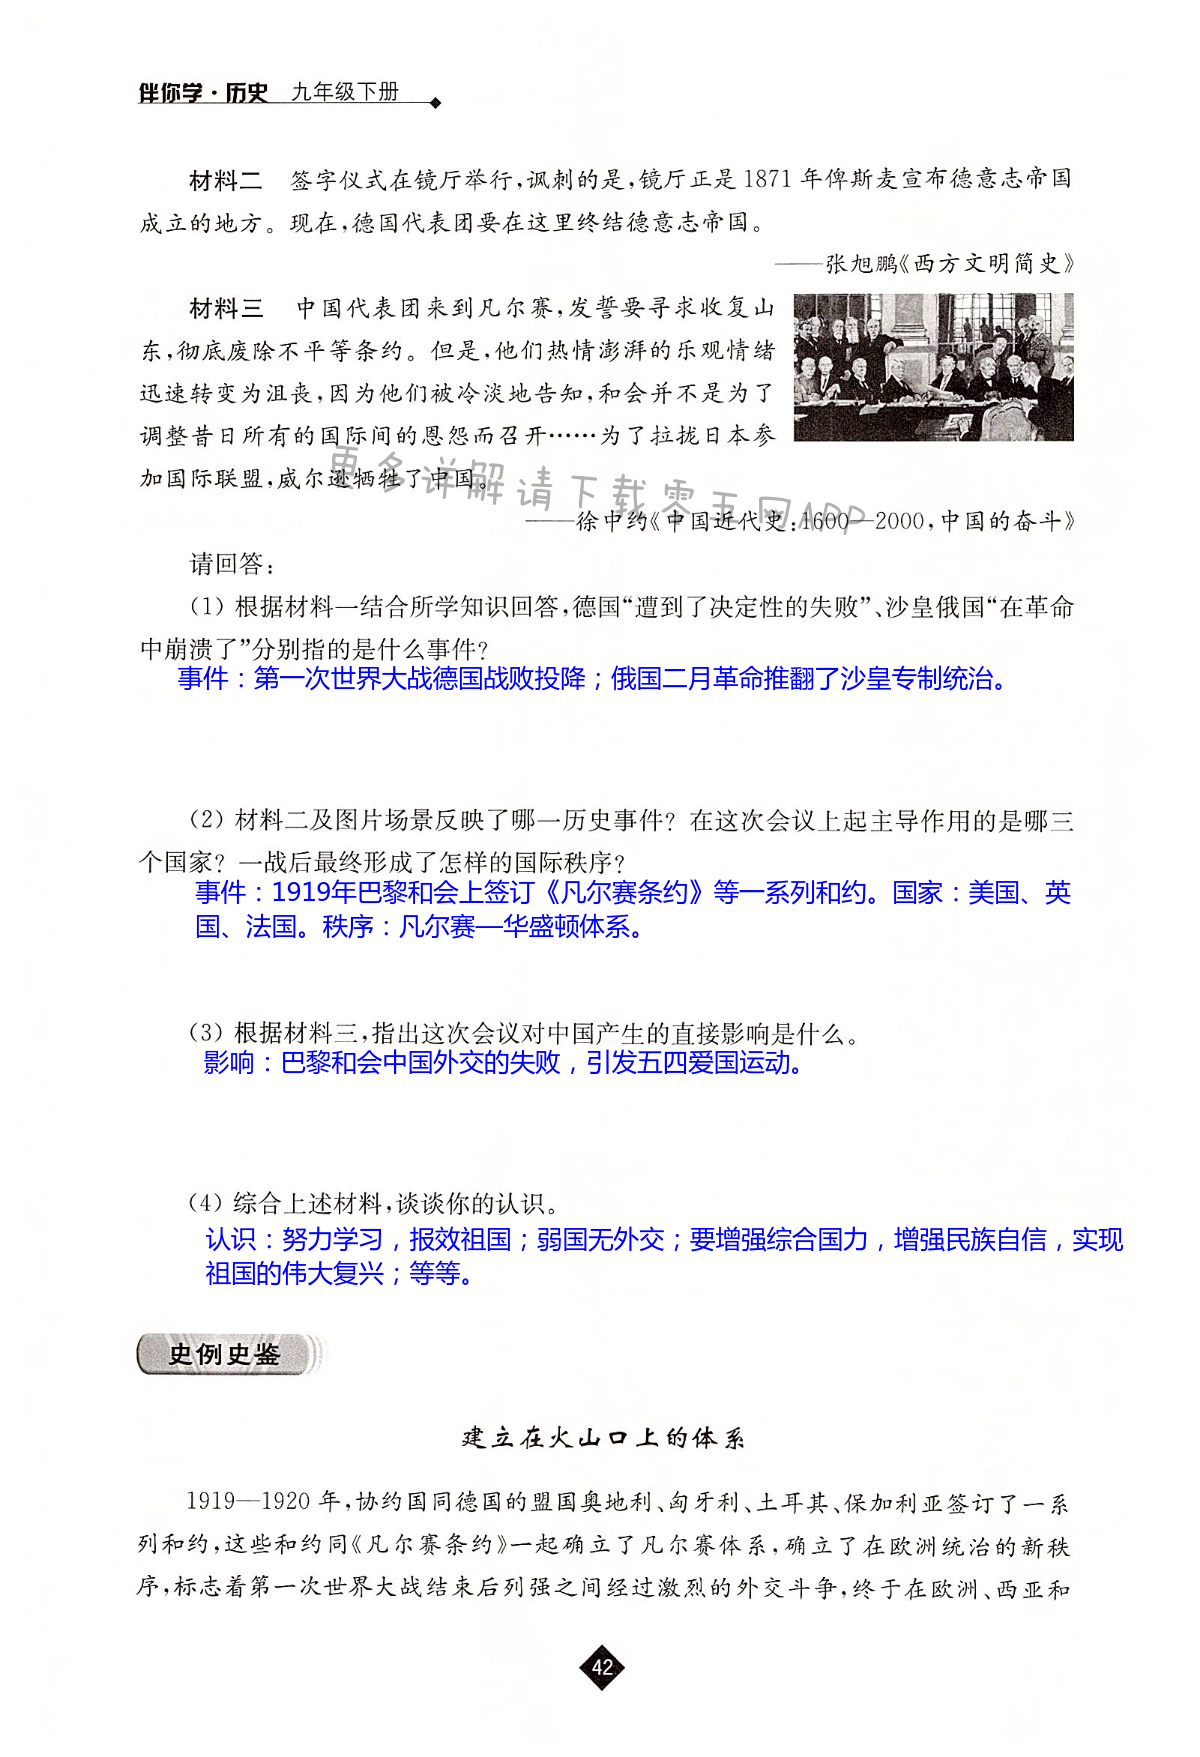 1937年11月3日，九国公约签字国会议在布鲁塞尔开幕。会议批评了日本在中国挑起“冲突”，但没有解决任何实际问题。图为出席会议的中国首席代表顾 ...